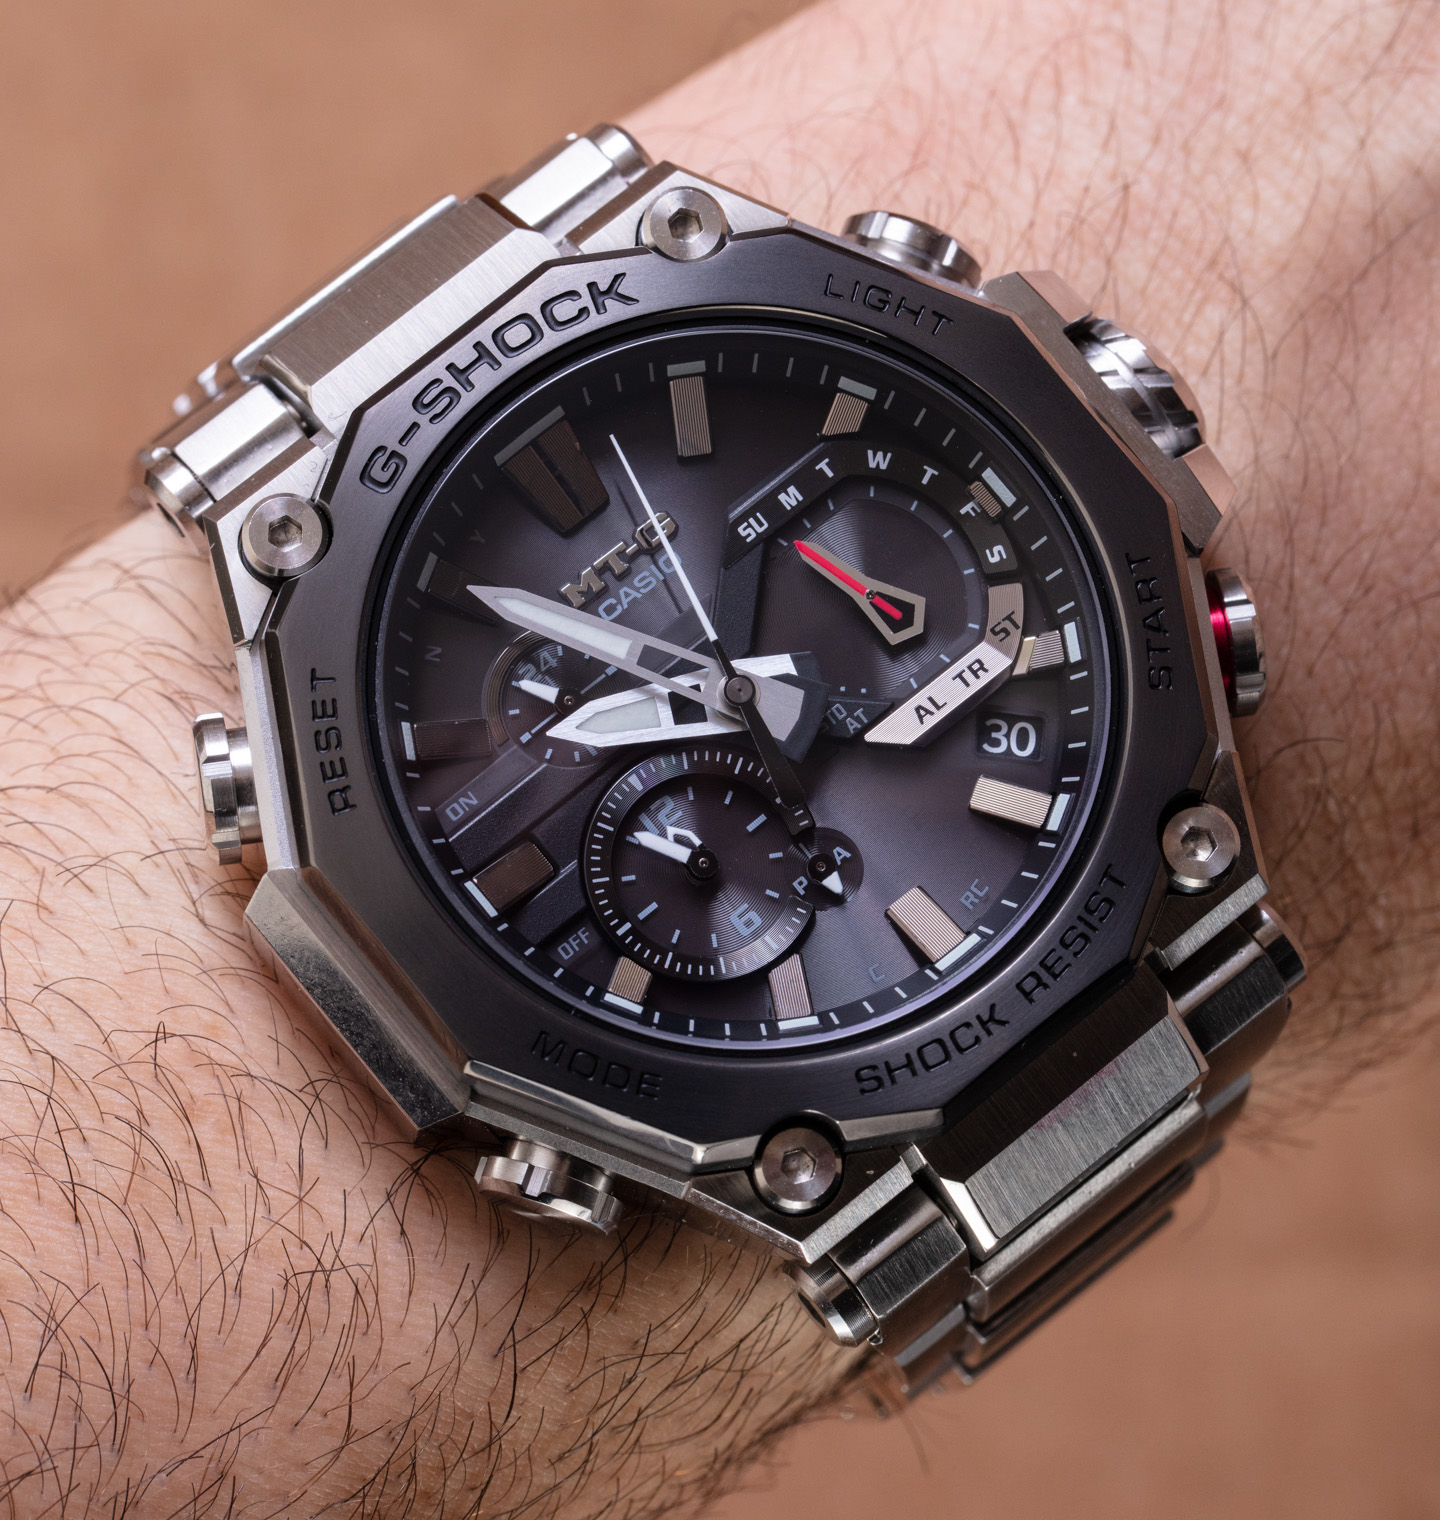 Hands-On: Casio G-Shock MT-G B2000 Watch | aBlogtoWatch